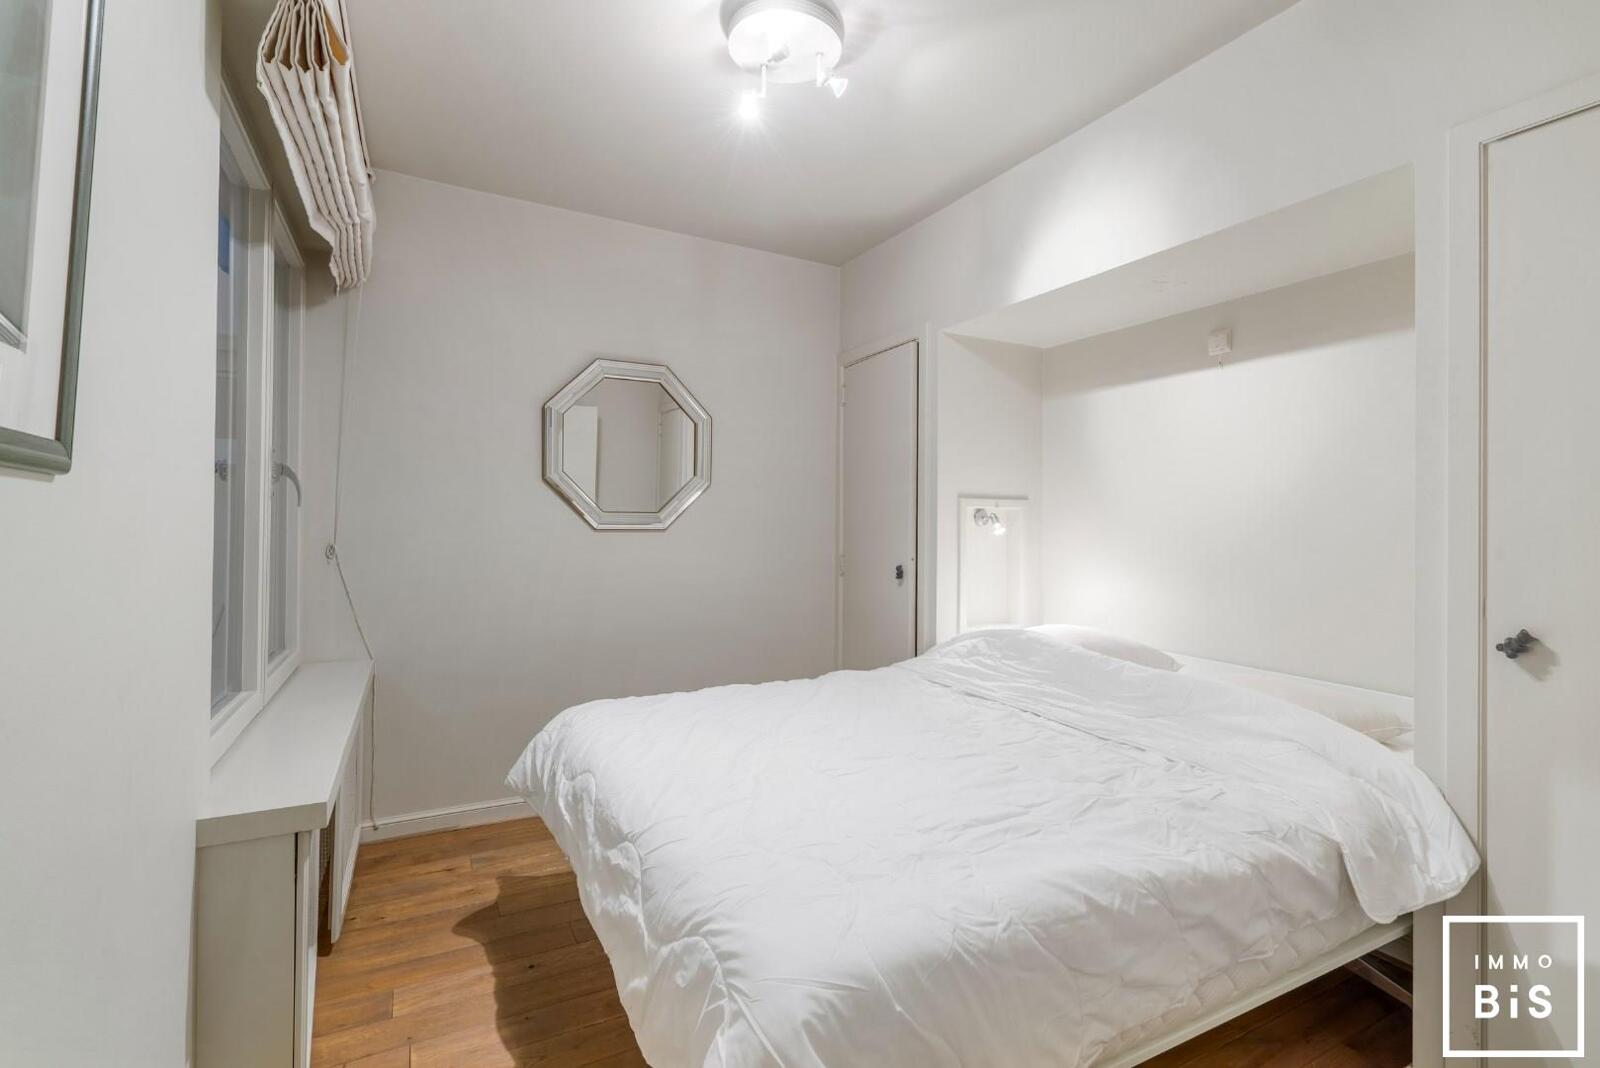 Uitstekend gelegen appartement met 3 slaapkamers in hartje Zoute op de Kustlaan aan de minigolf!  7